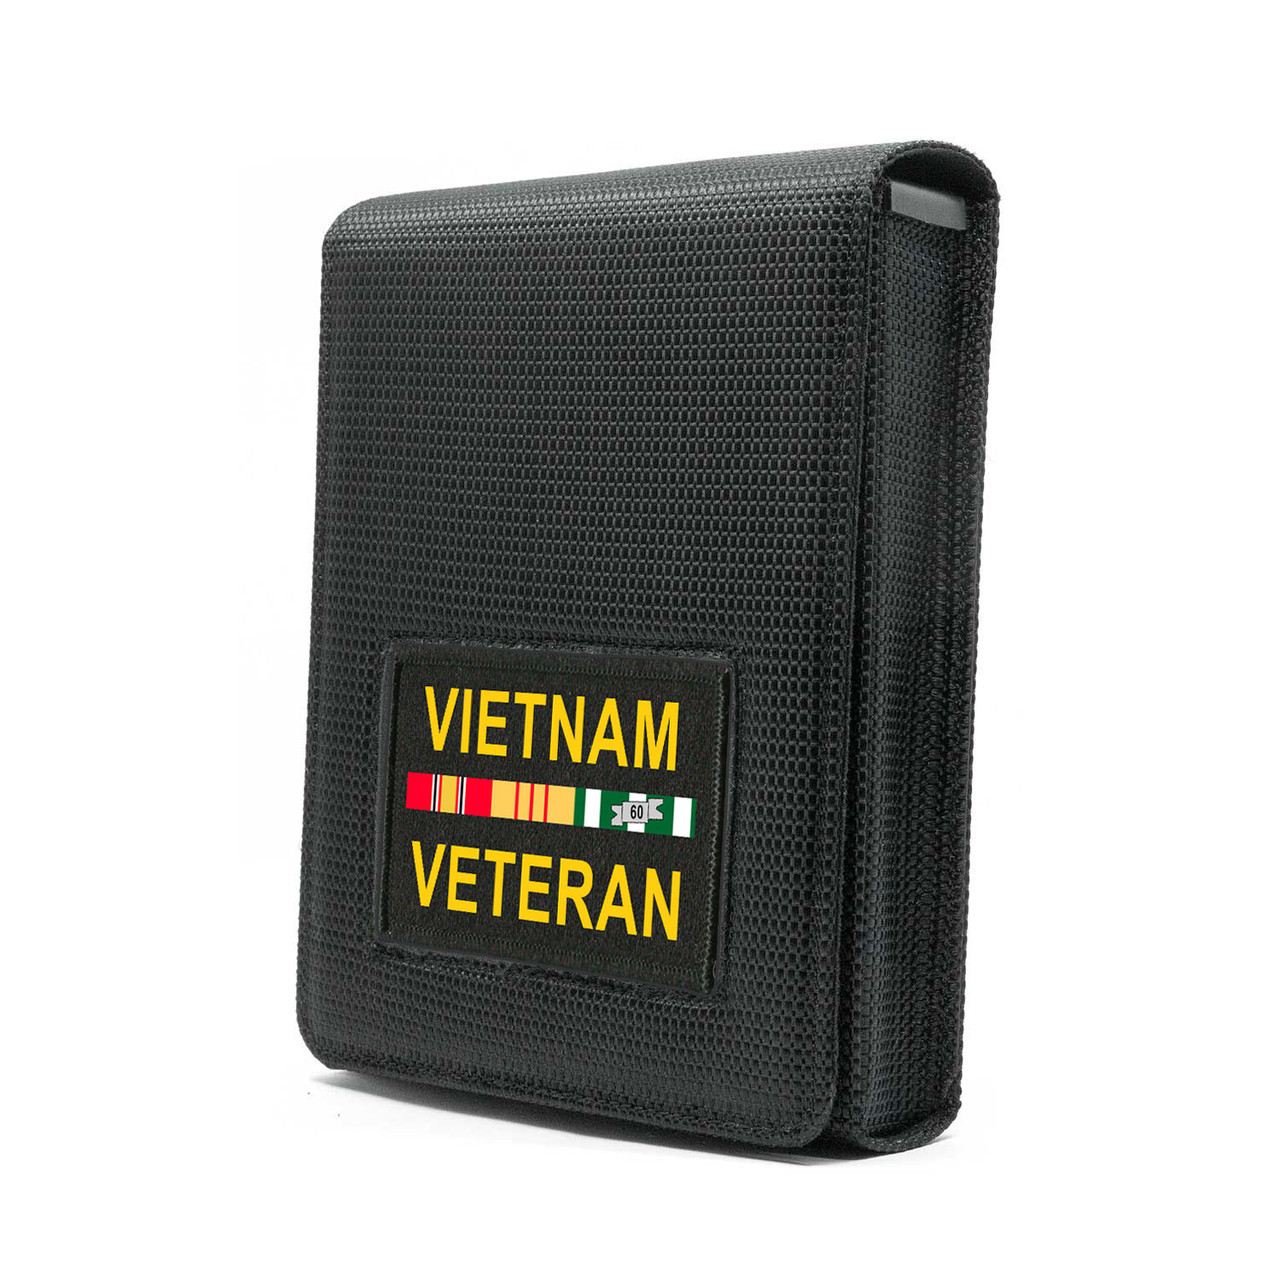 Byrna HD Vietnam Veteran Holster